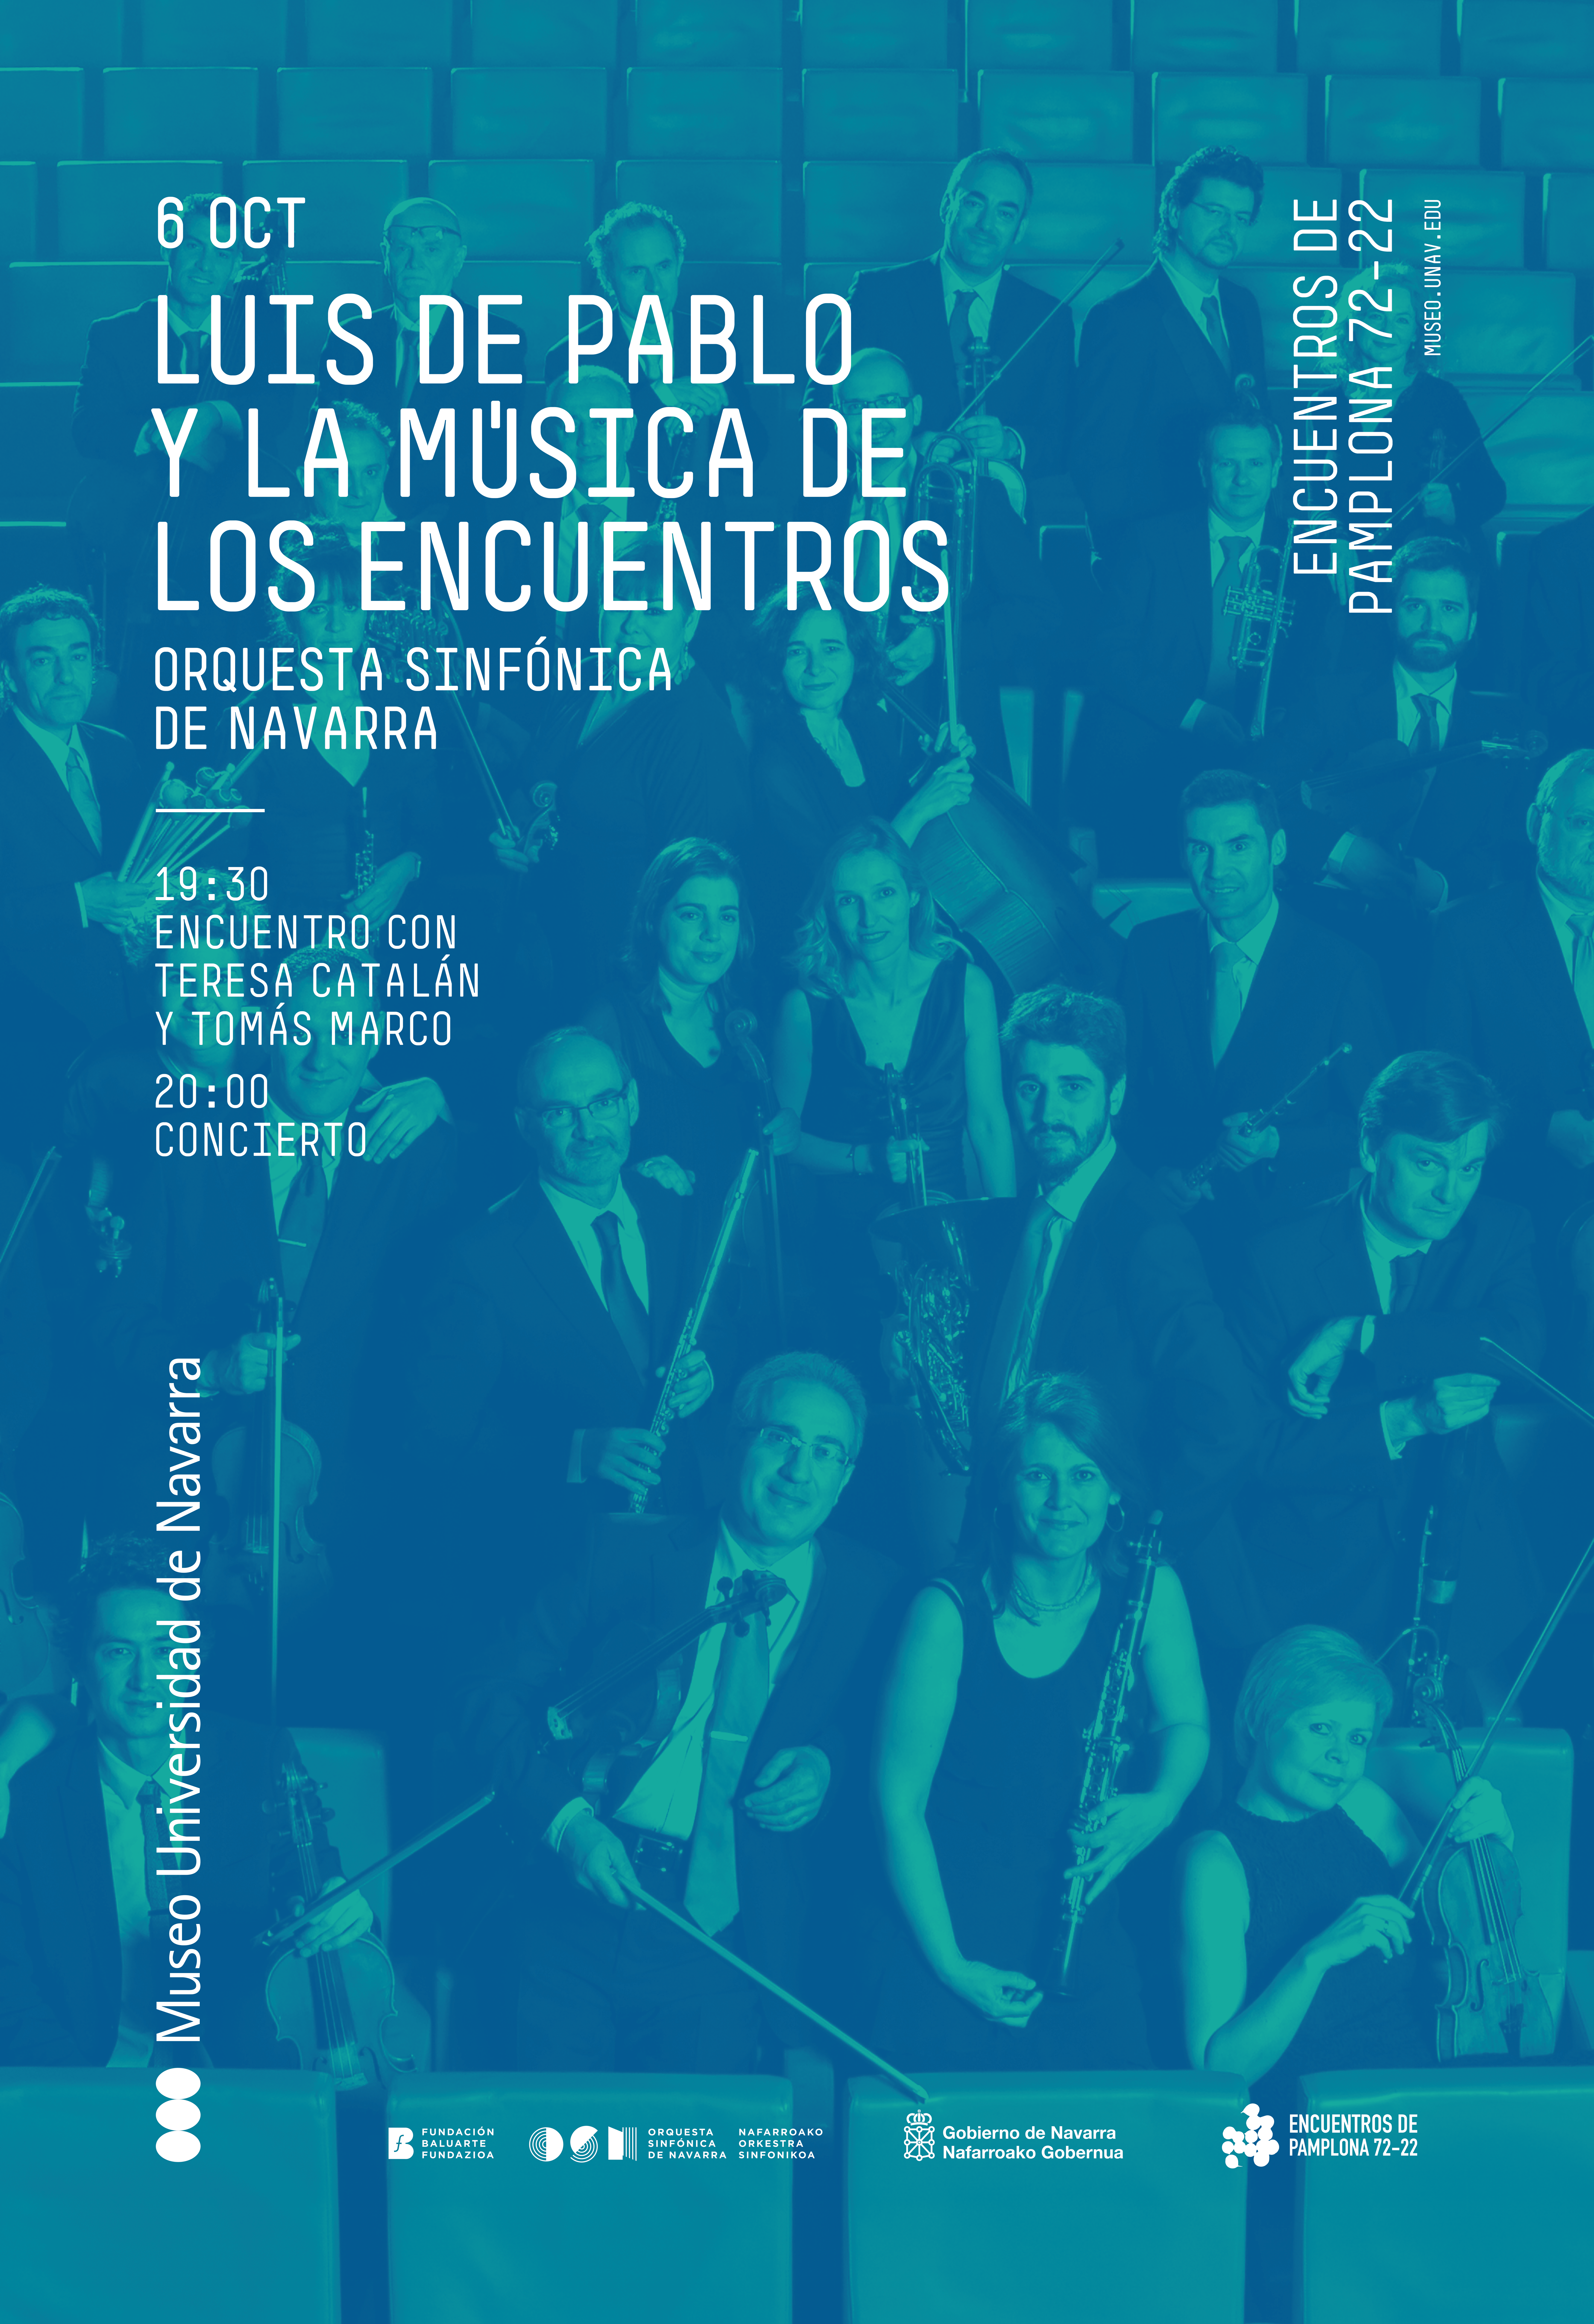 La OSN ofrecerá en el MUN el concierto inaugural de los Encuentros de Pamplona 72/22 el próximo 6 de octubre